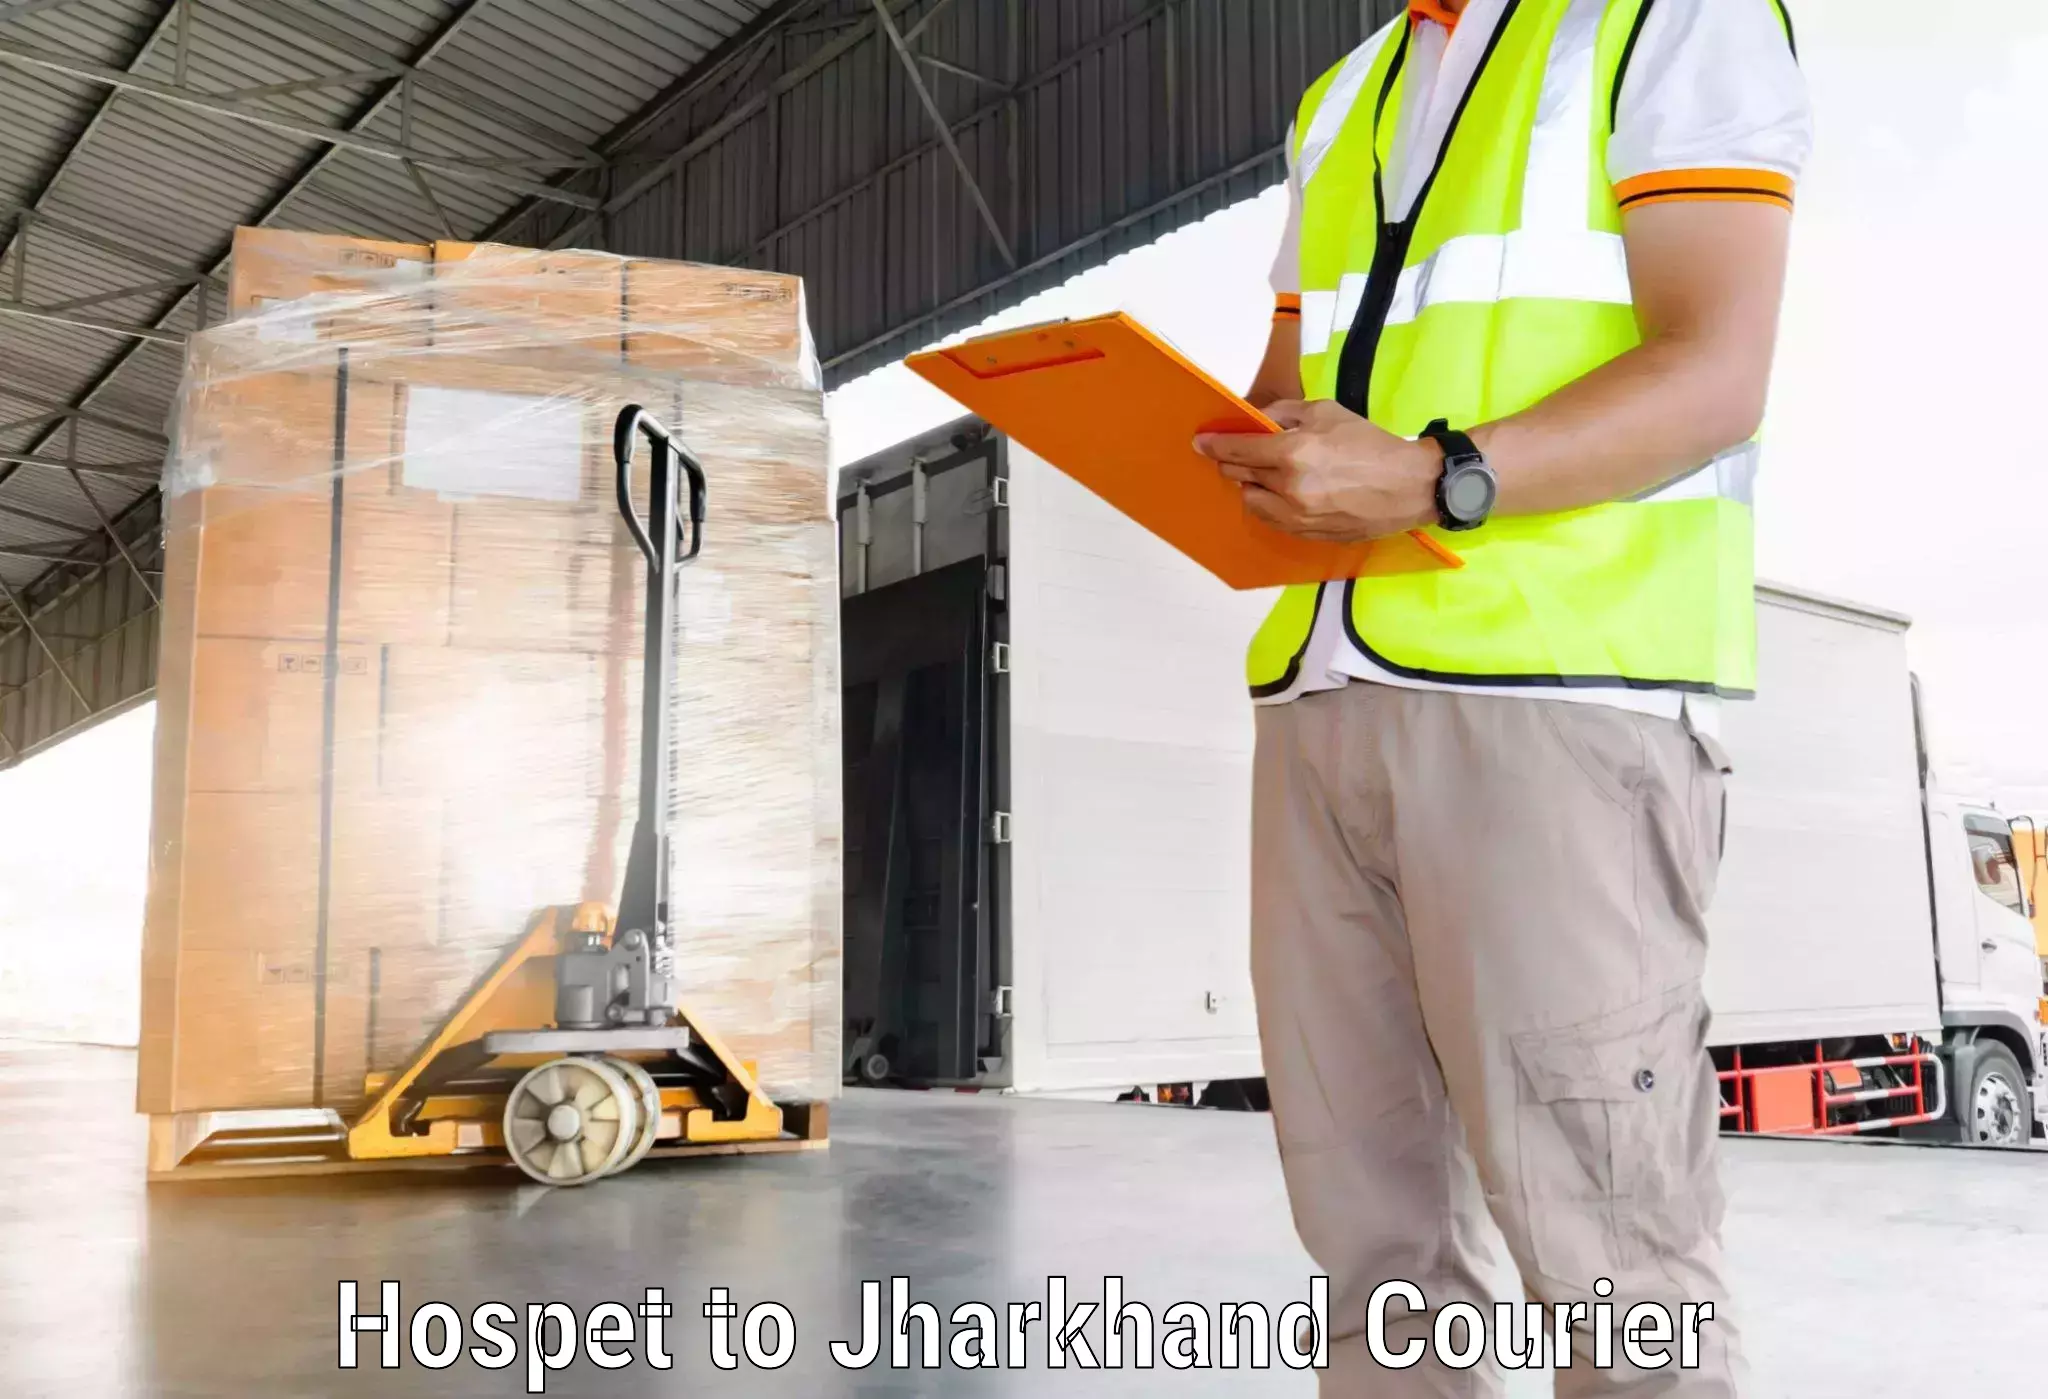 Courier service efficiency Hospet to Poreyahat